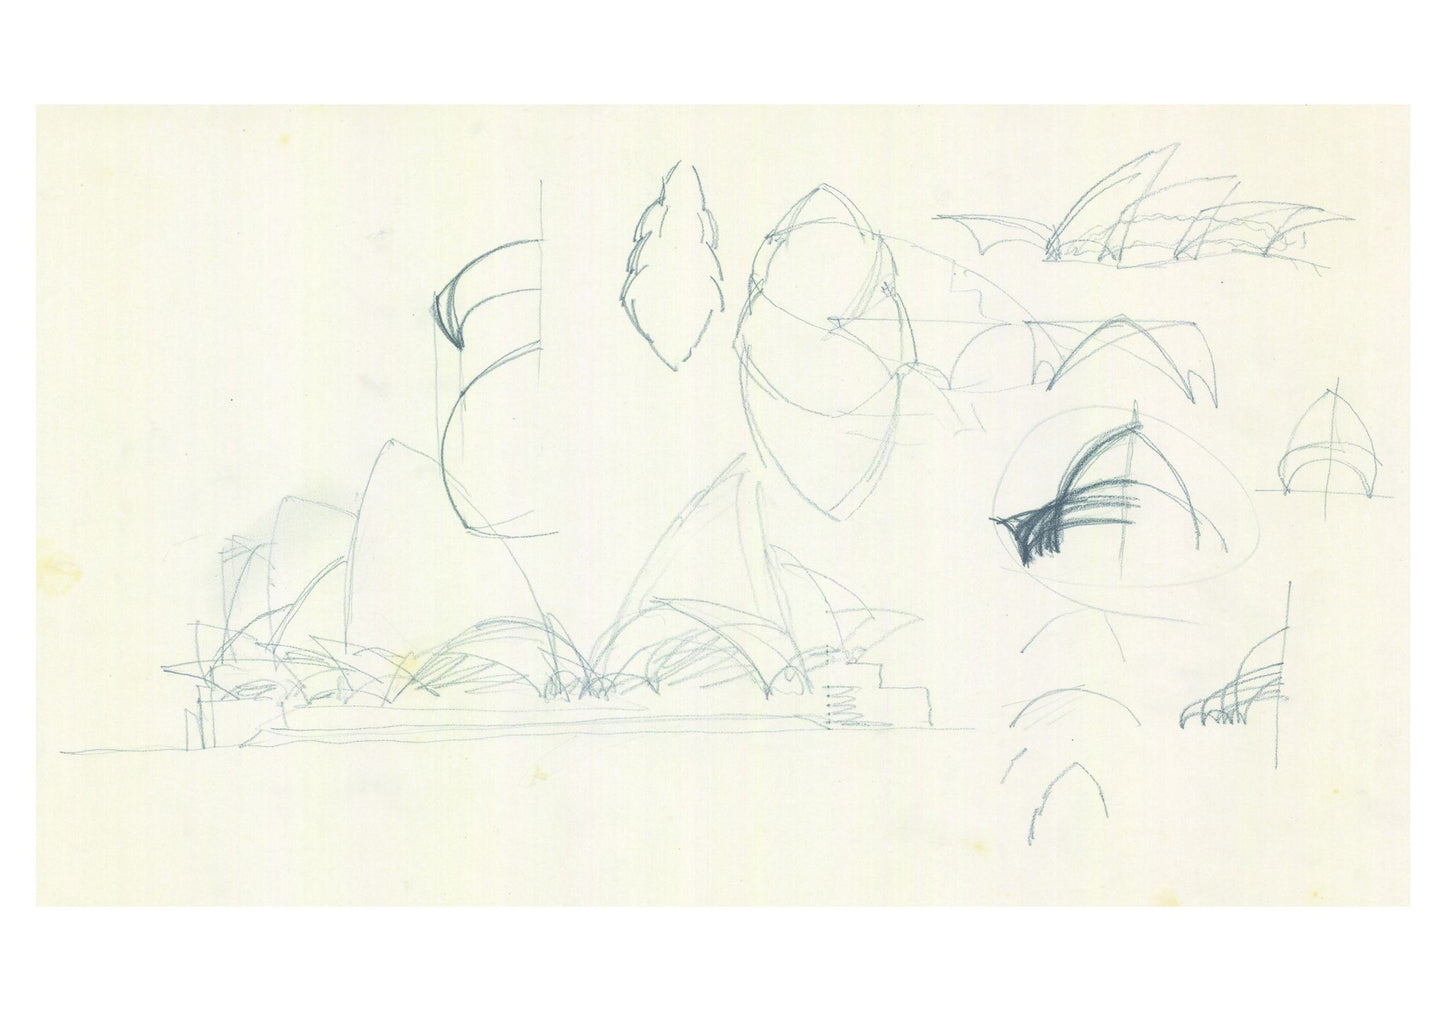 Jørn's sketch of the Sydney Opera House